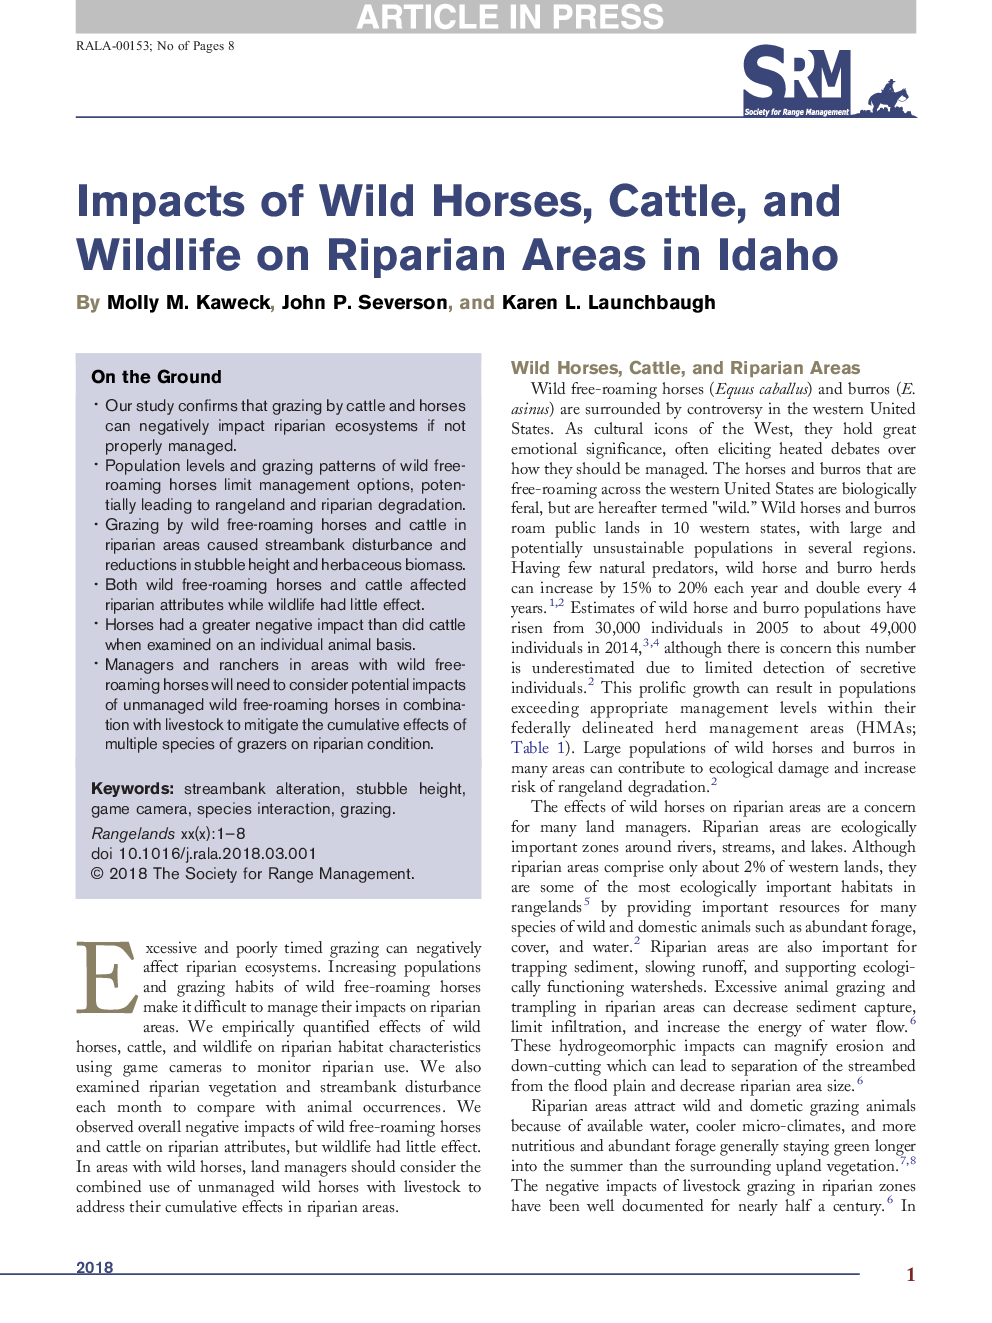 اثرات اسب های وحشی، گاو و حیات وحش در مناطق کوهستانی در آیداهو 